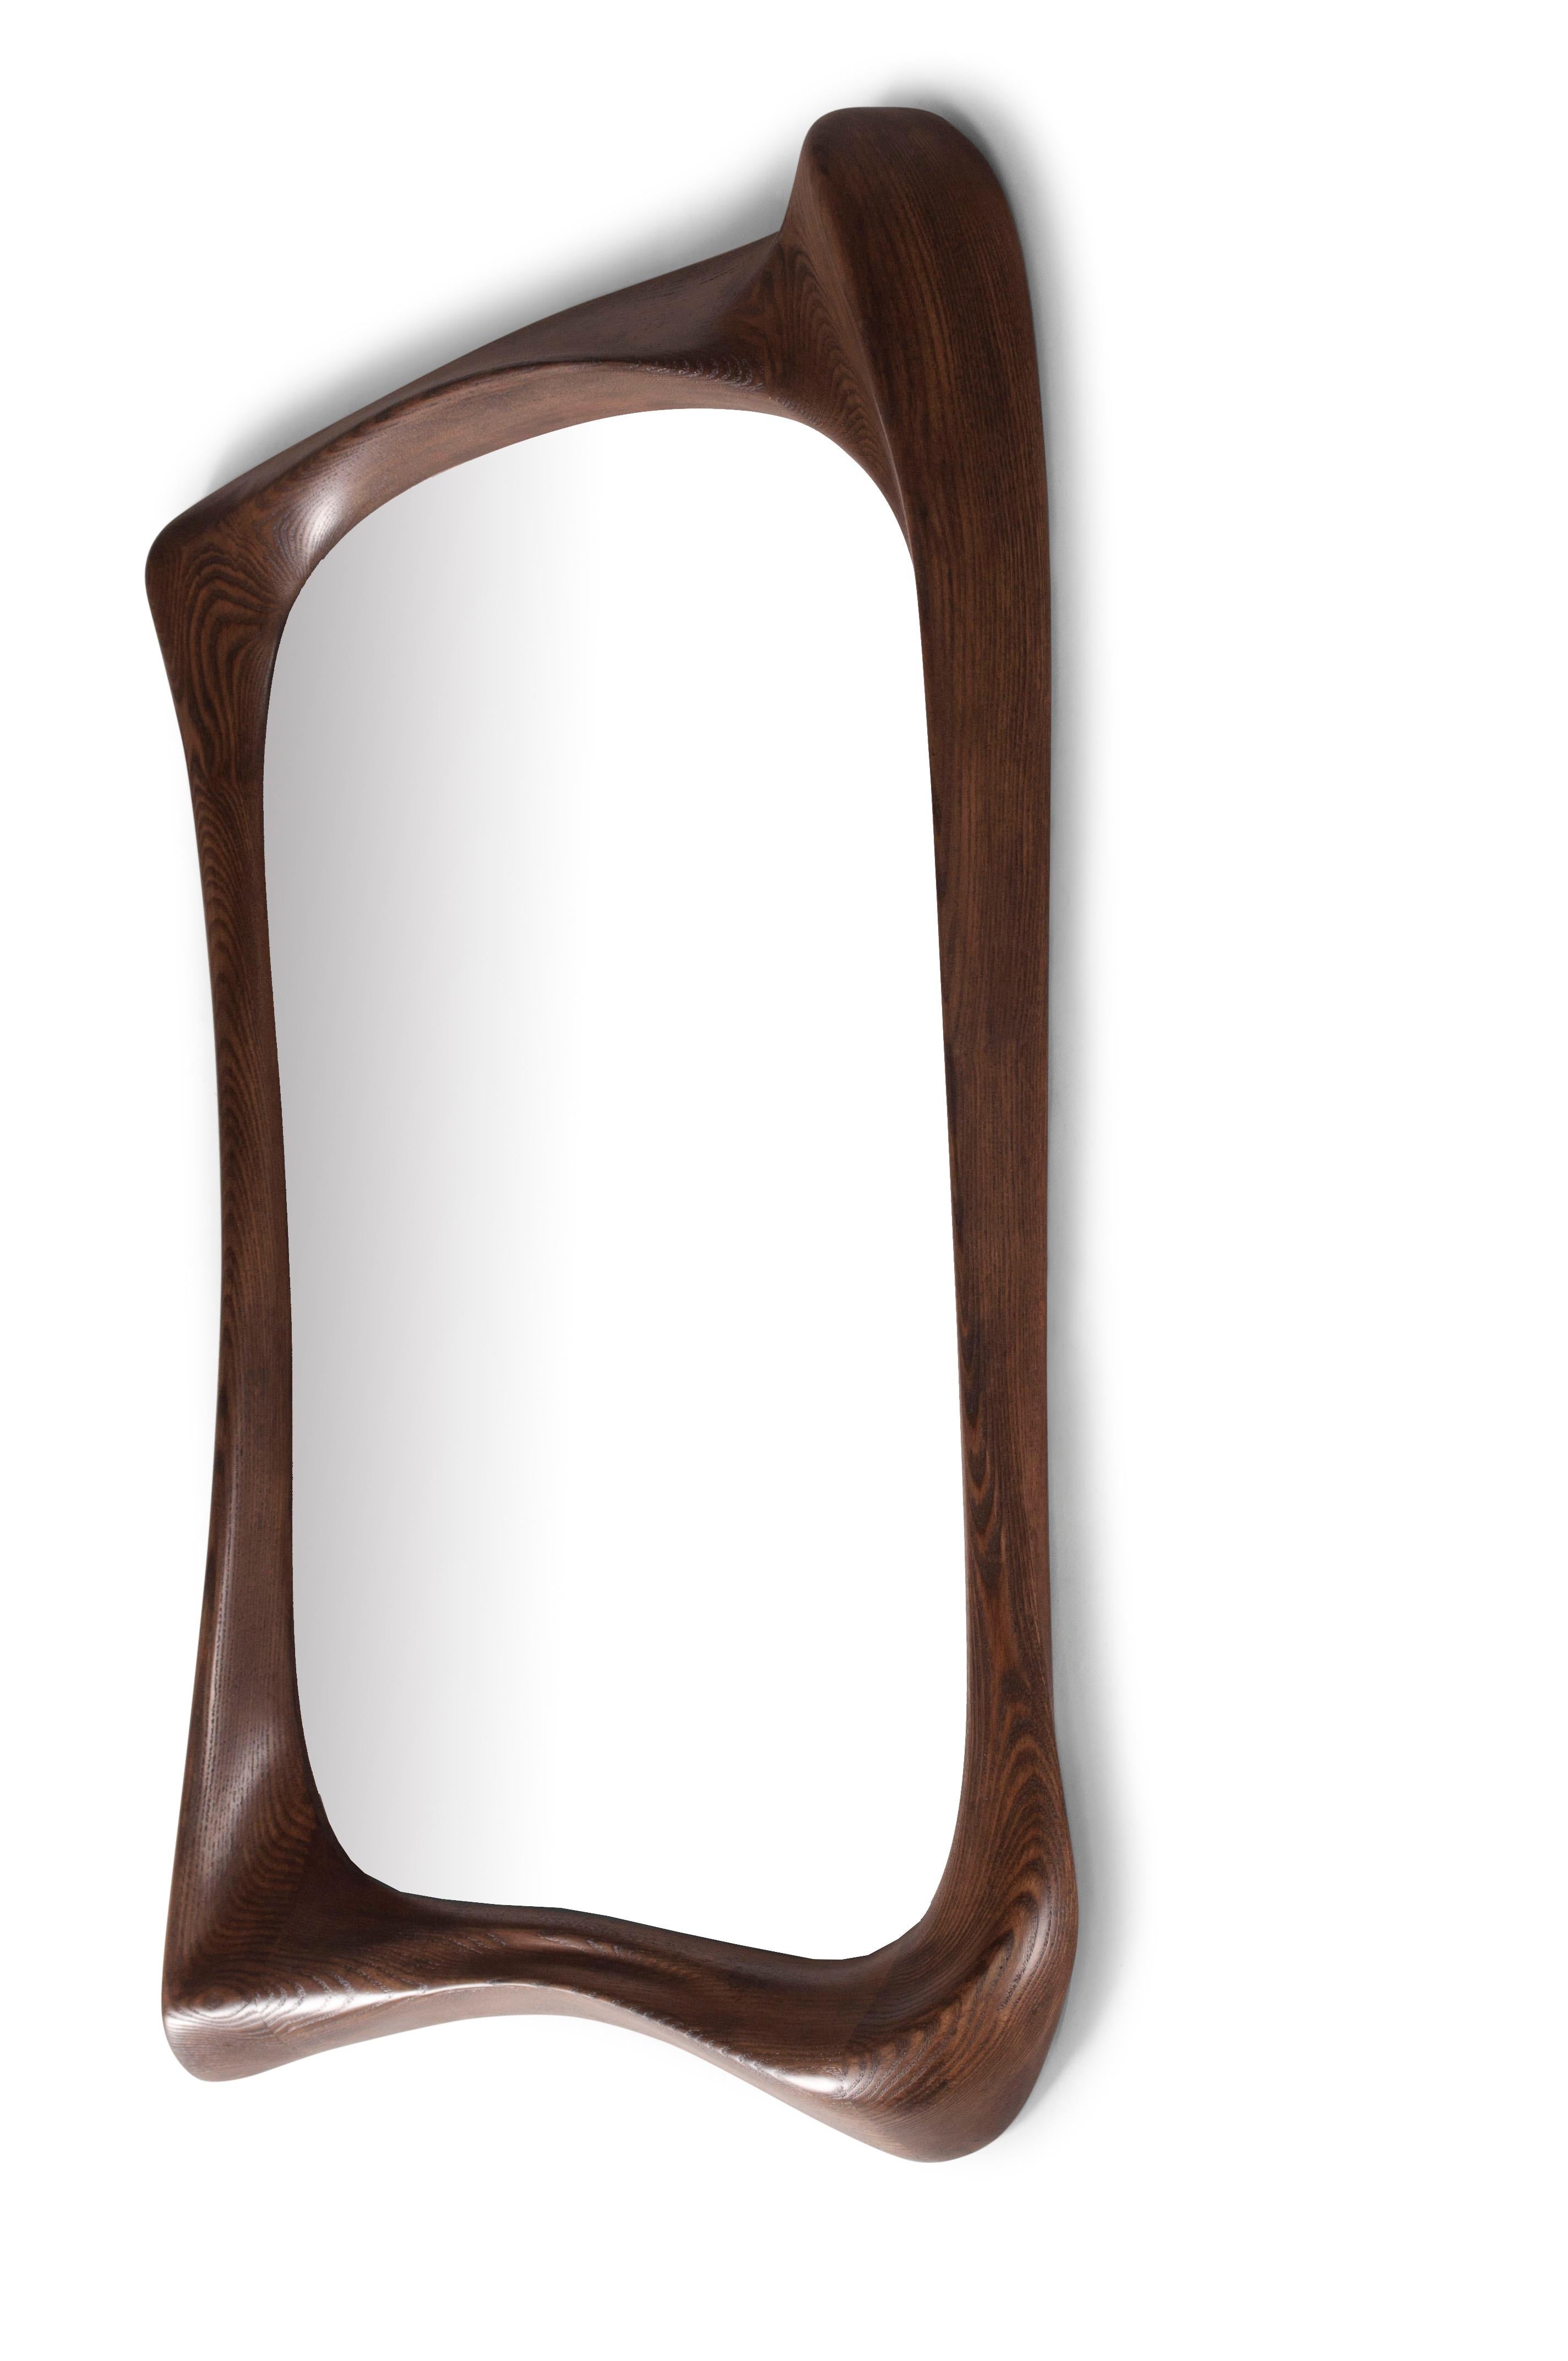 Einzigartiger Spiegel, Massivholz mit Graphit-Walnuss gebeizter Oberfläche 

Über Amorph: 
Amorph ist ein Design- und Produktionsunternehmen mit Sitz in Los Angeles, Kalifornien. Wir sind stolz auf unsere handgefertigten Entwürfe, die wir mit